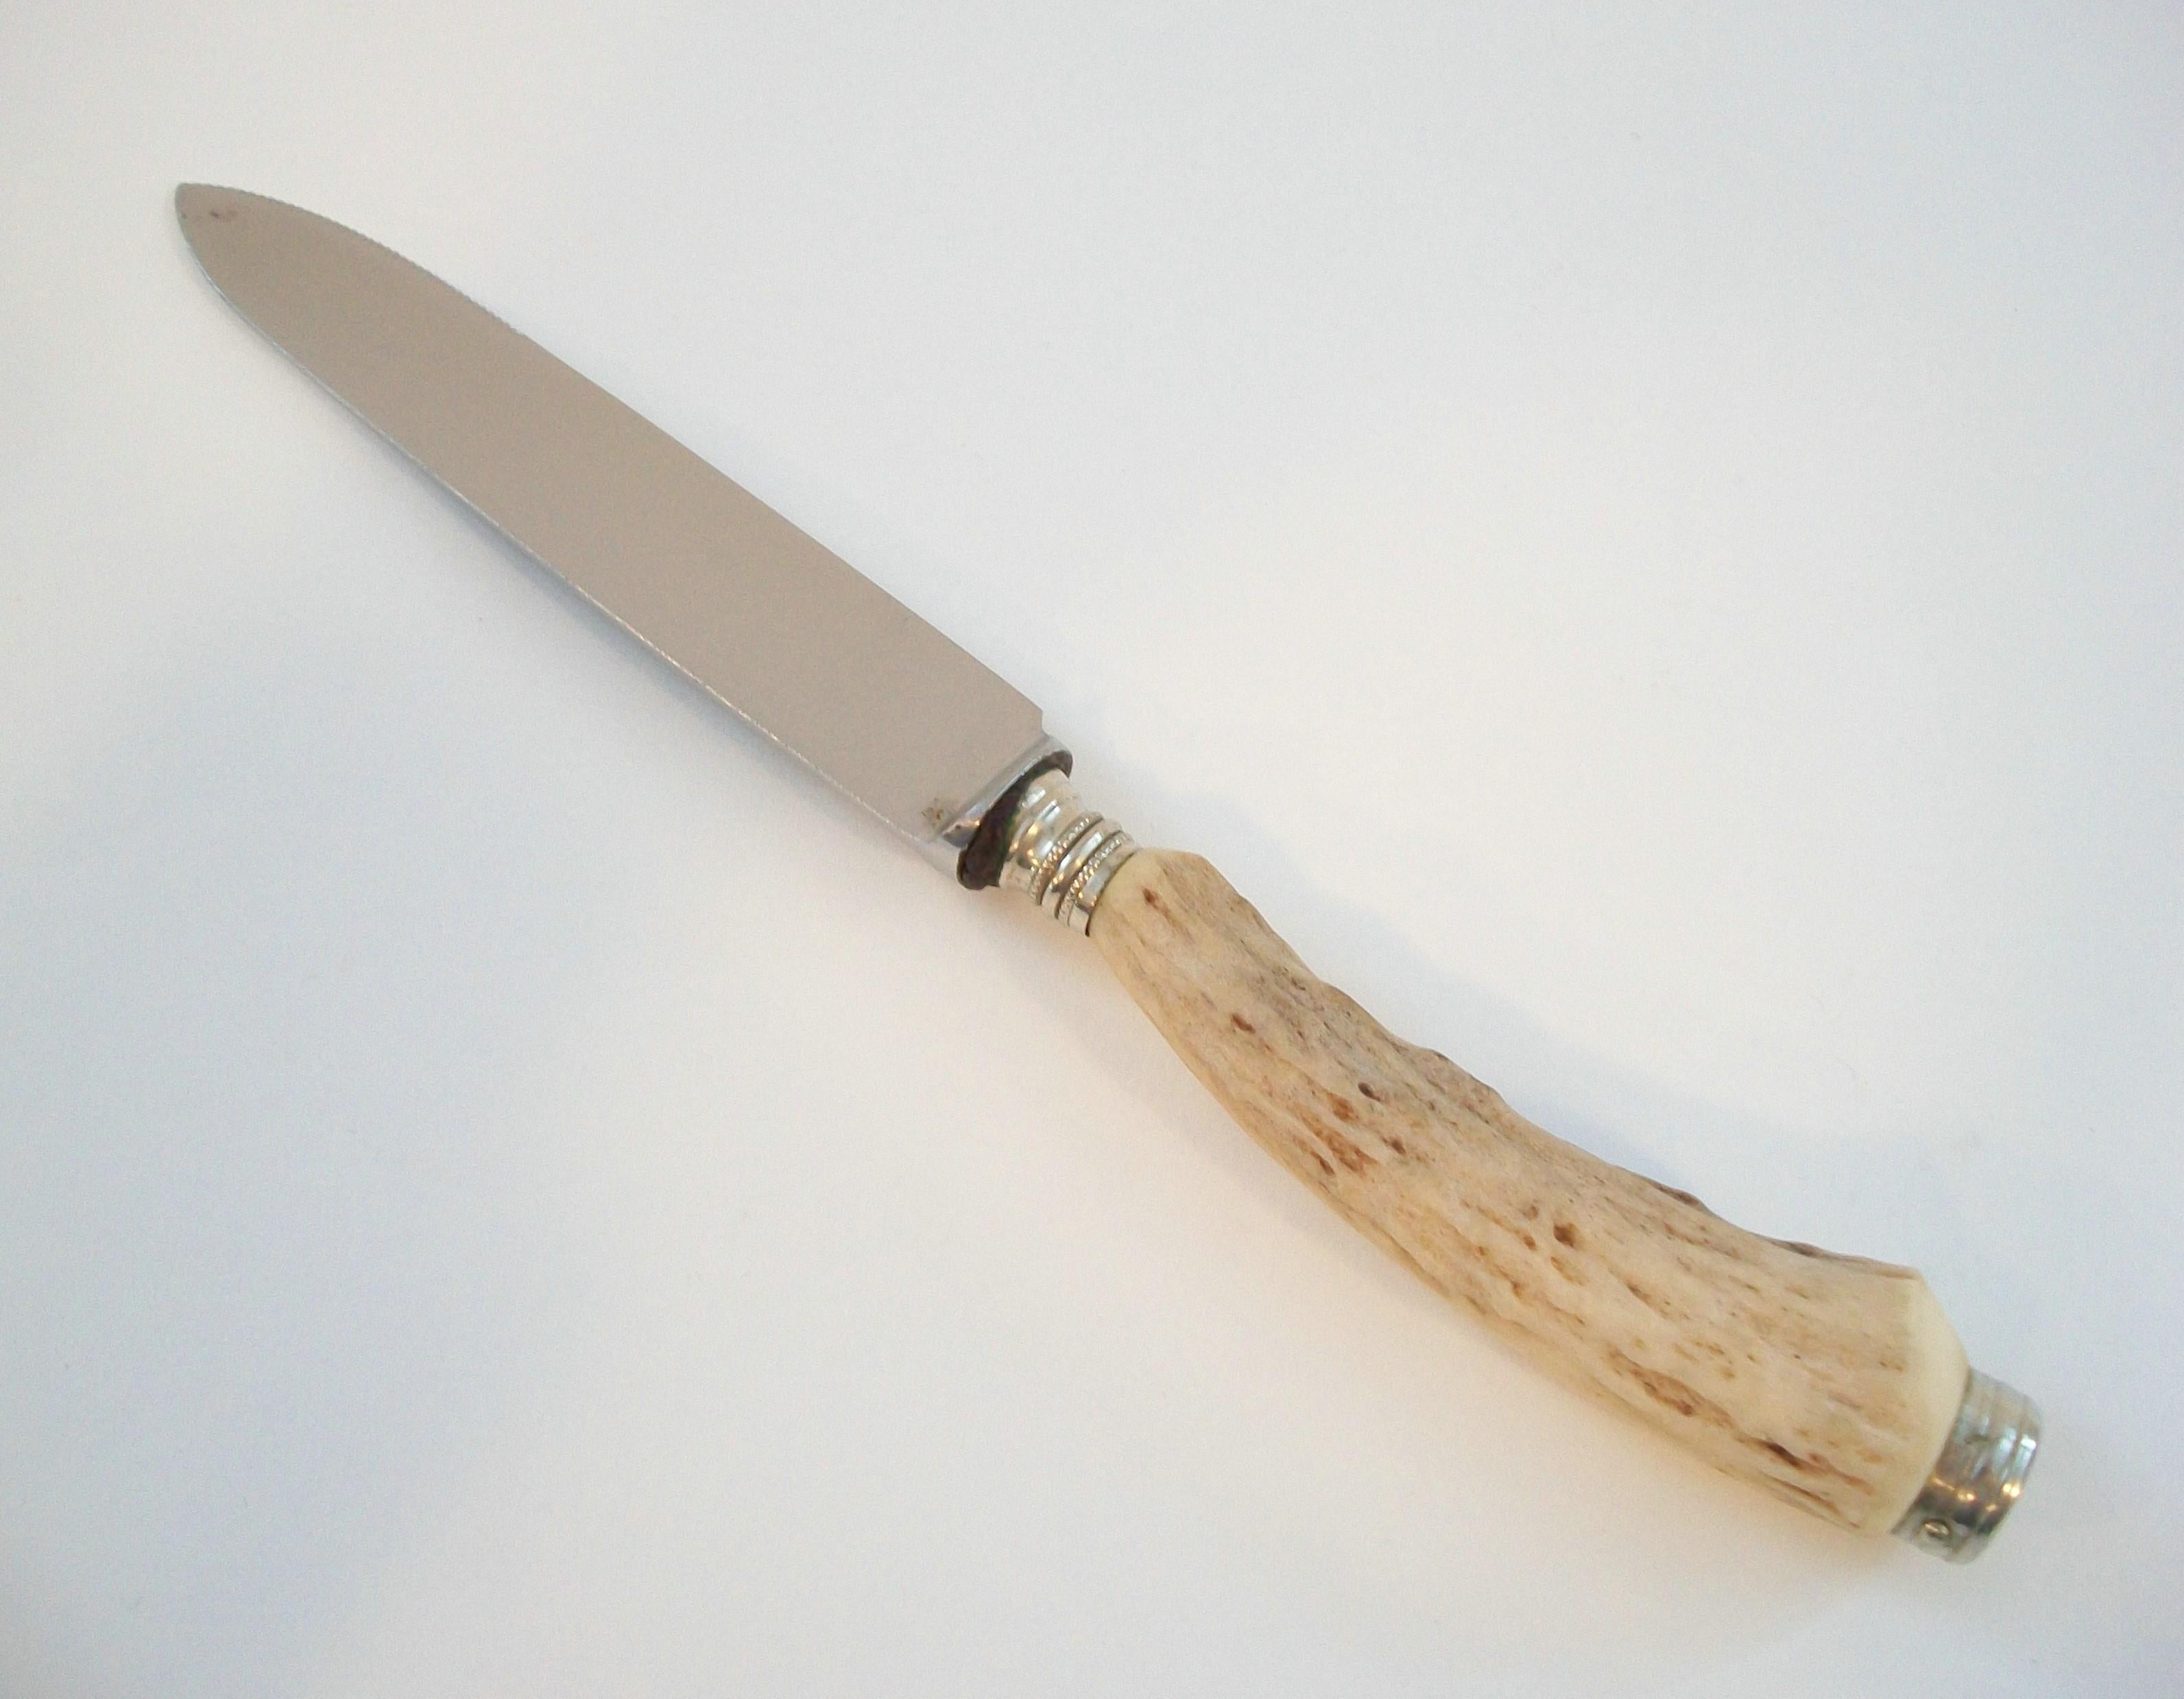 Rustic SOLINGEN - Antler Handled Steak Knife - Engraved Blade - Germany - Circa 1950's